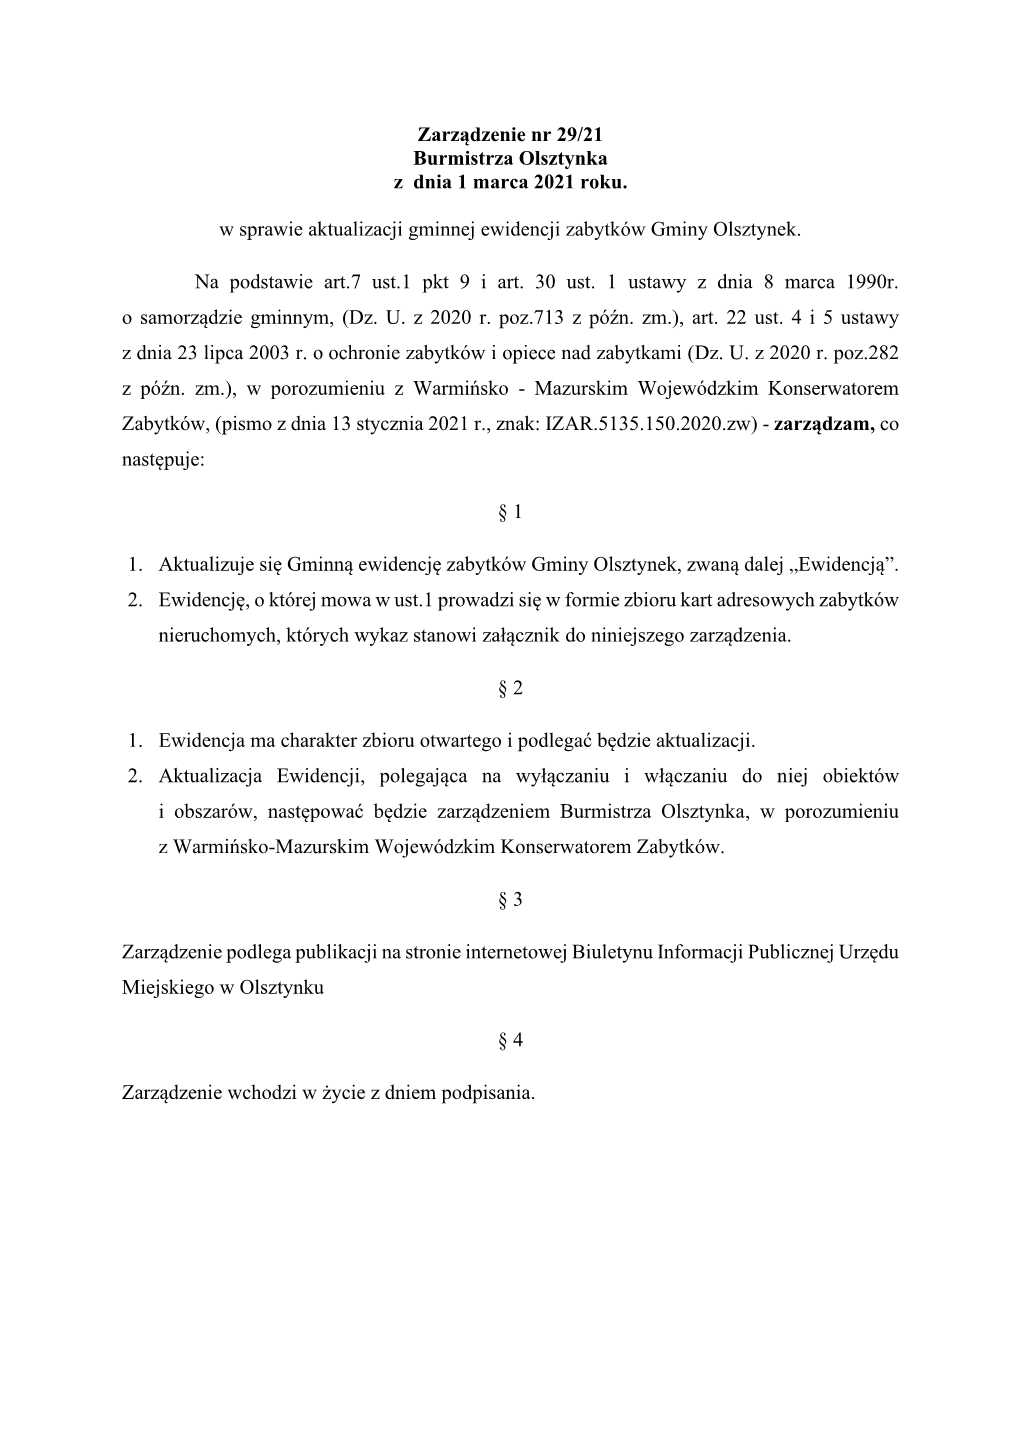 Zarządzenie Nr 29/21 Burmistrza Olsztynka Z Dnia 1 Marca 2021 Roku